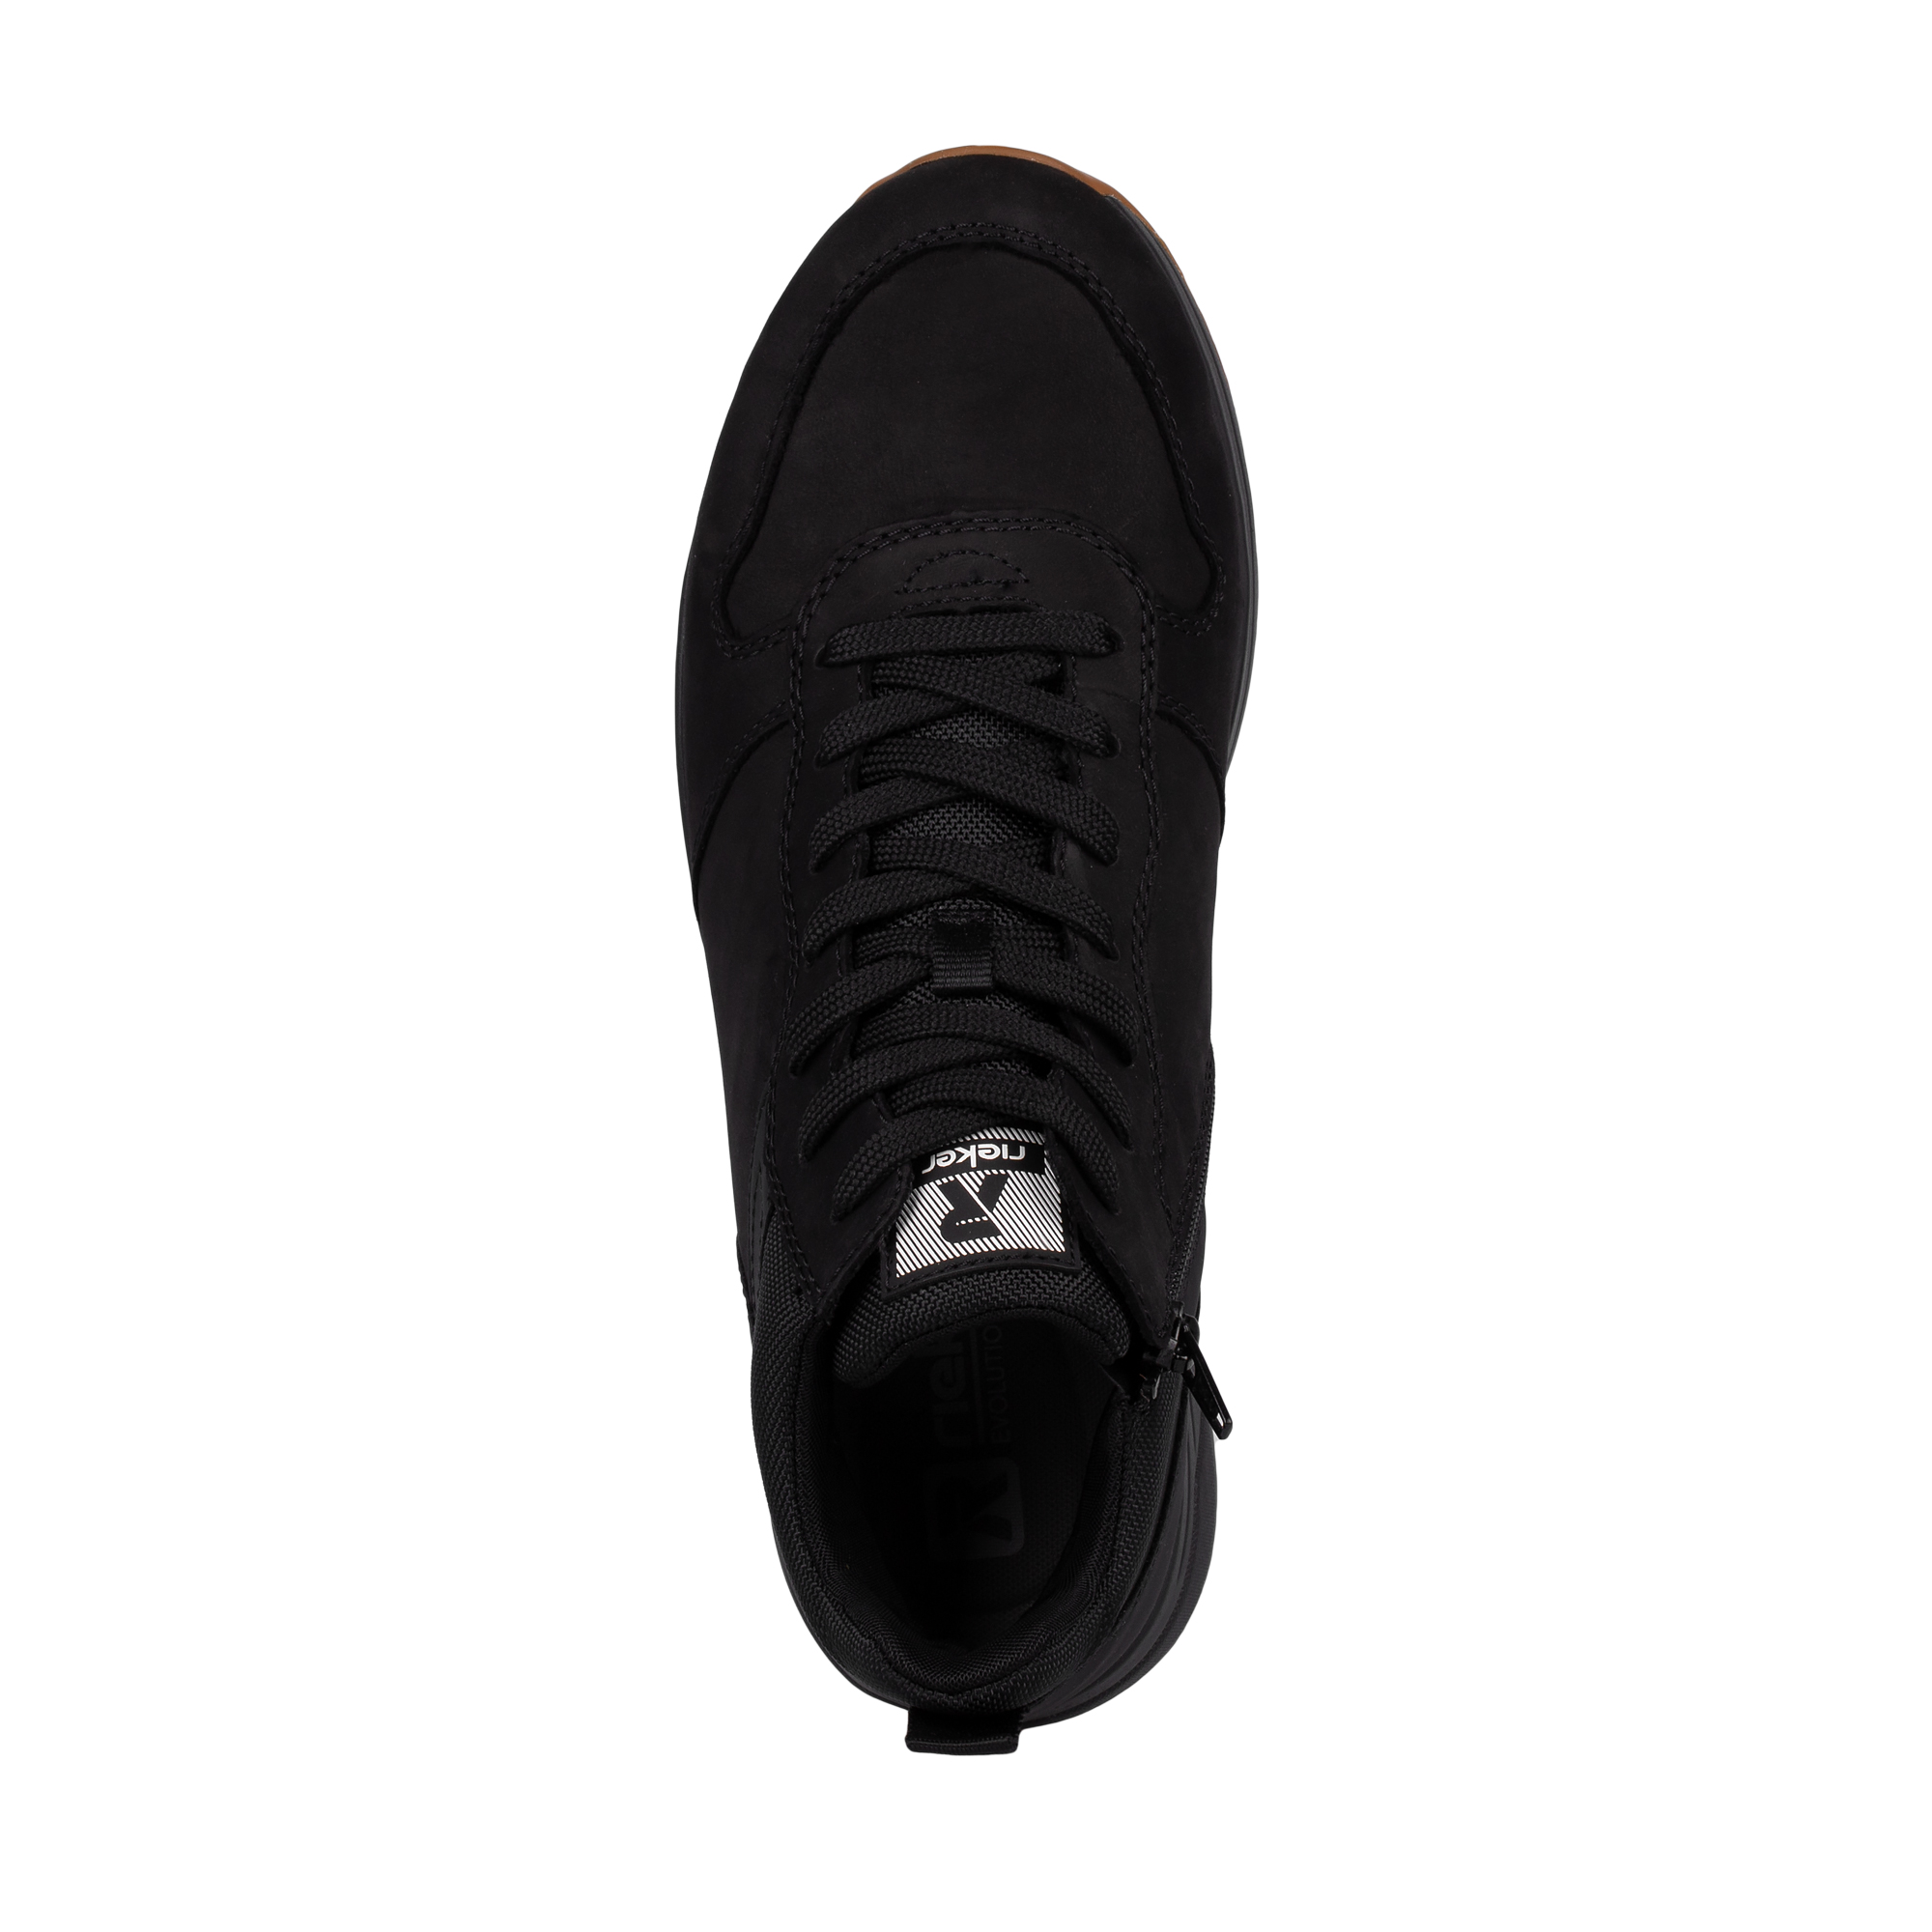 Ботинки Rieker 07060-00, цвет черный, размер 46 - фото 4